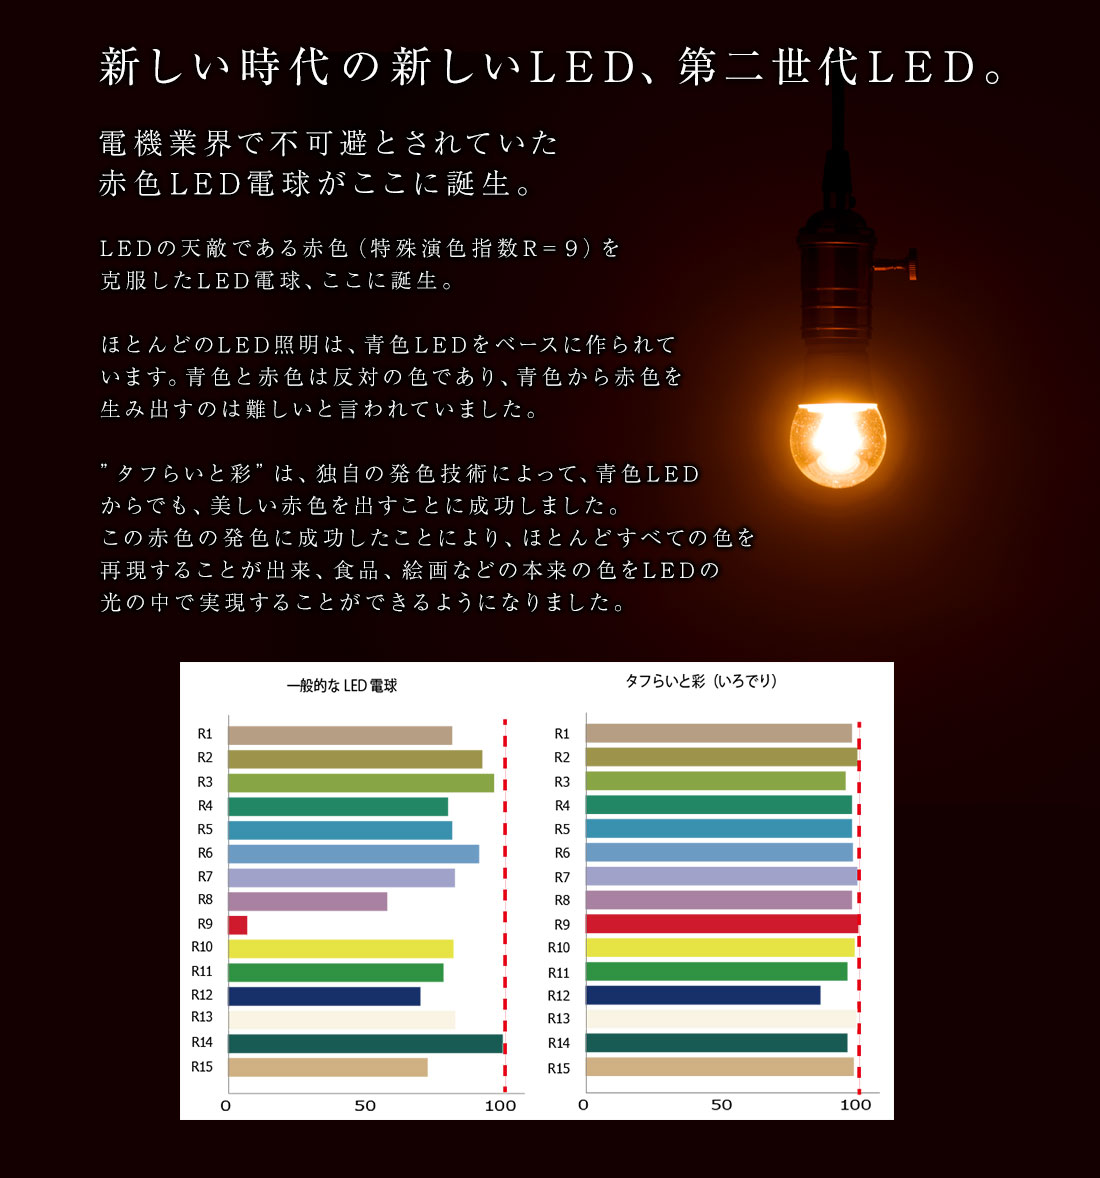 新しい時代の新しいLED、第二世代LED。電機業界で不可避とされていた赤色LED電球がここに誕生。